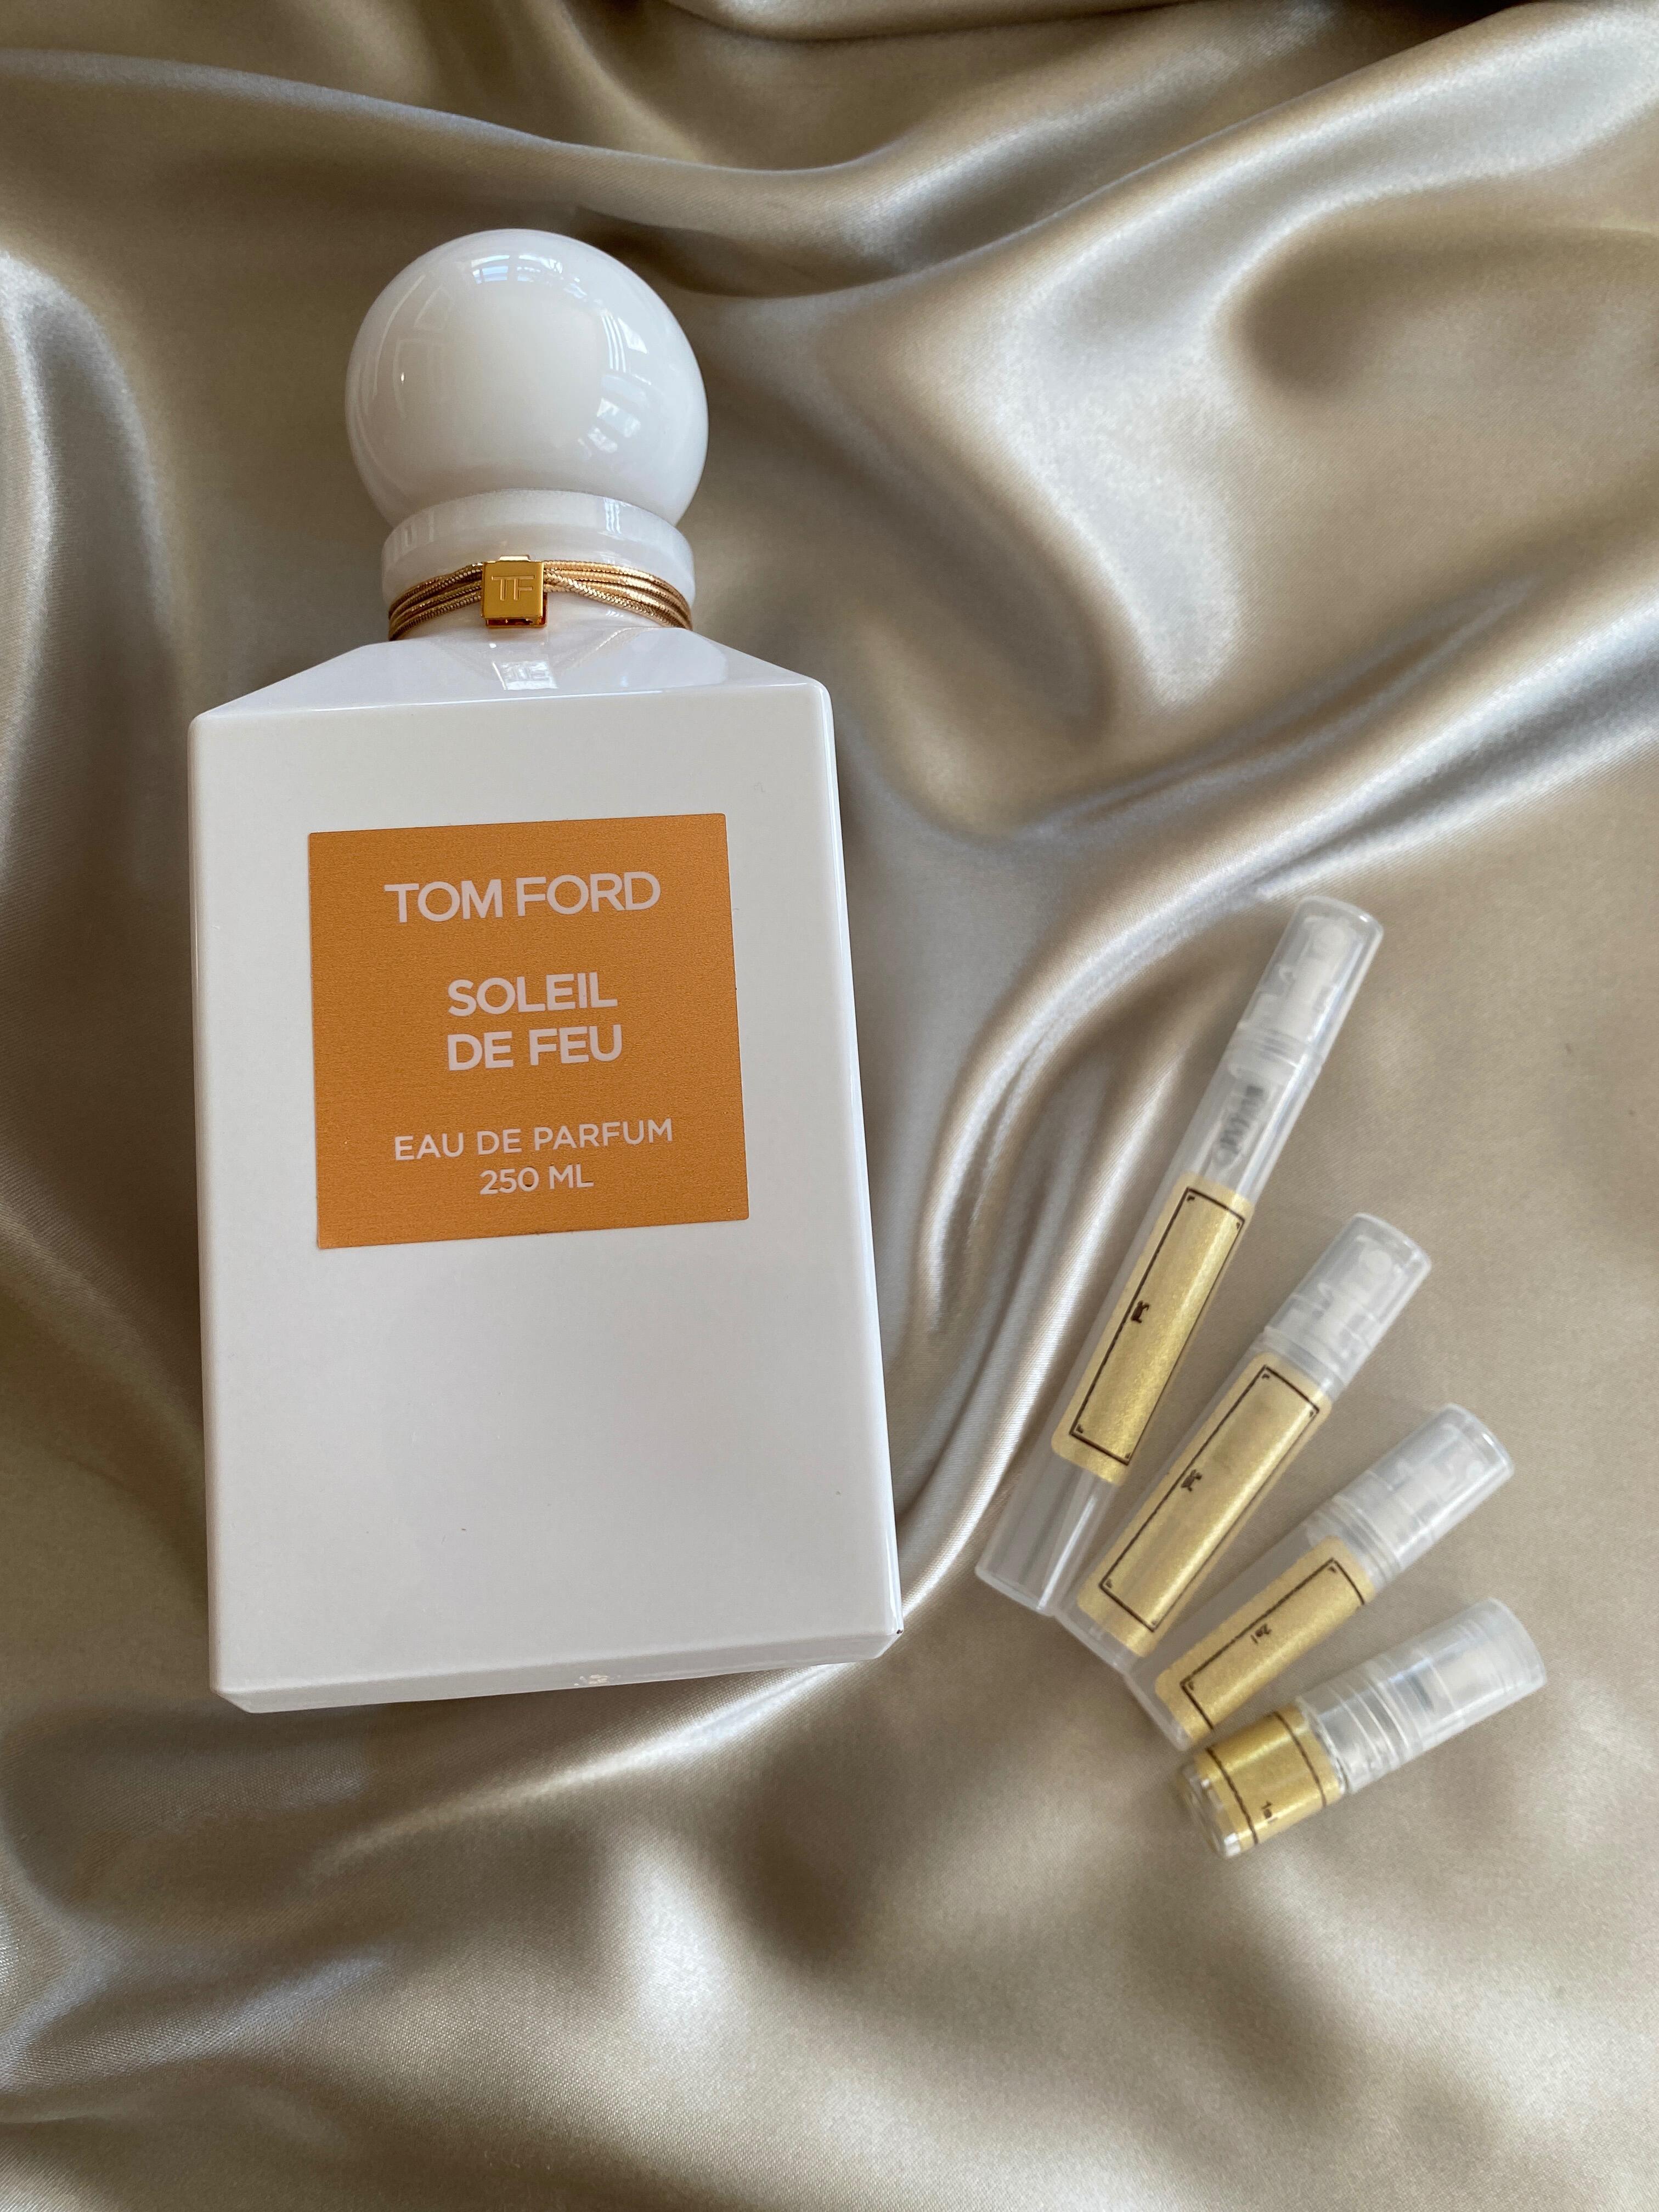 Tom Ford - Soleil De Feu - Fragrance Samples